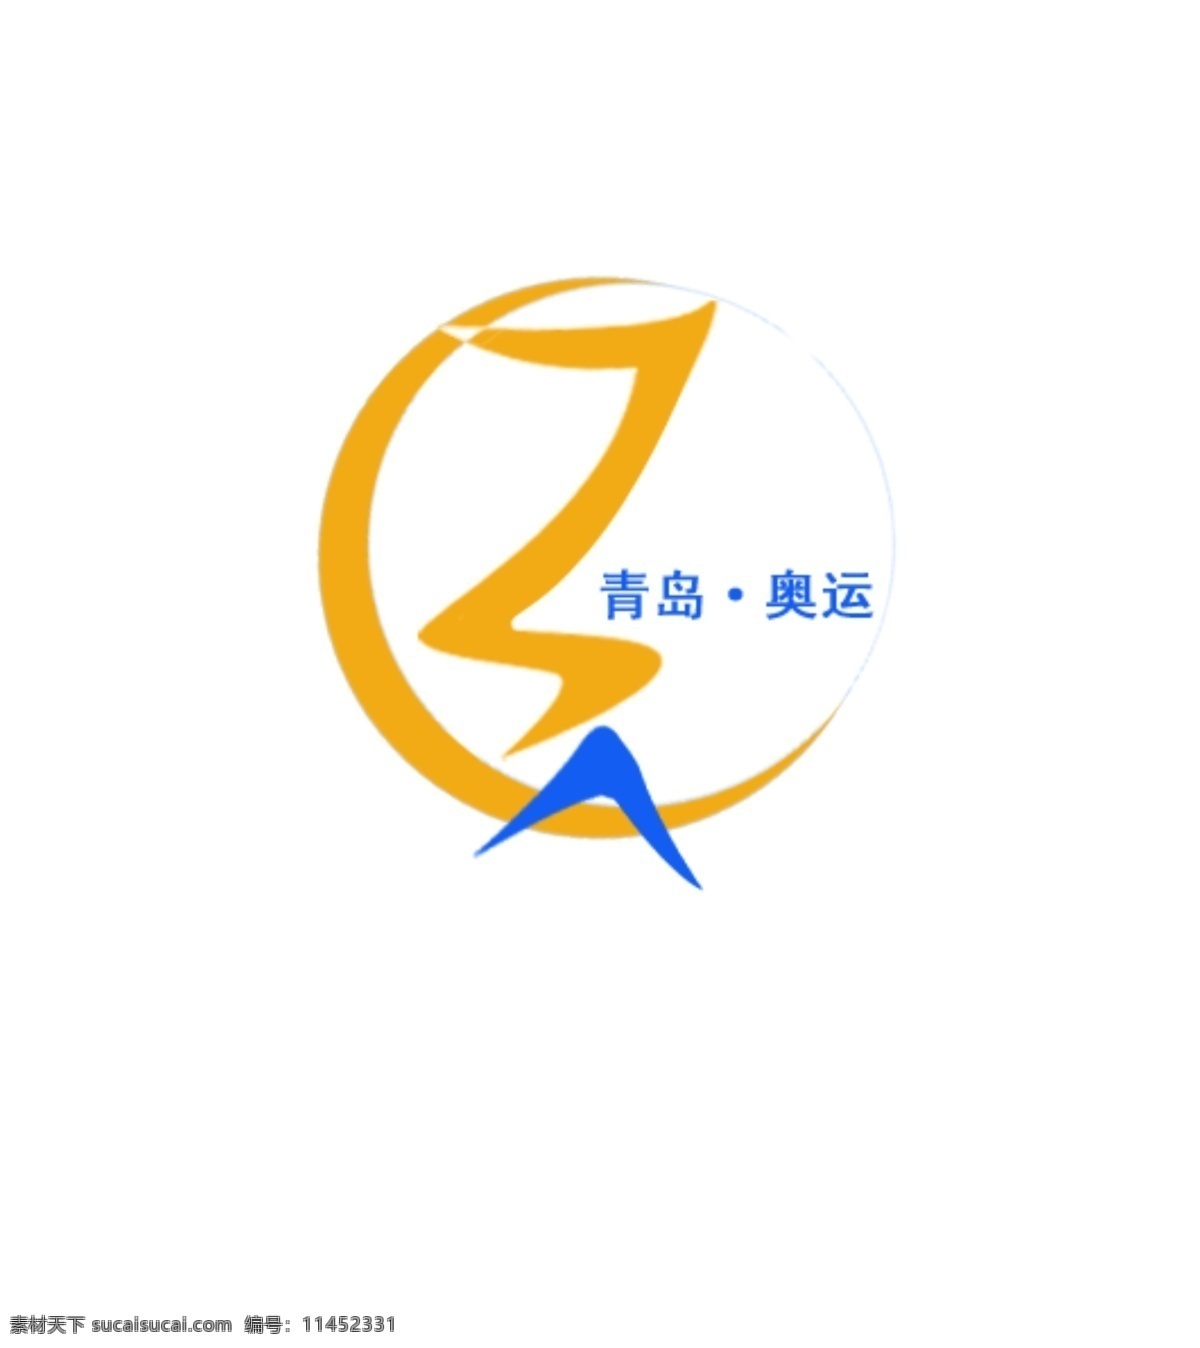 青岛 奥运 标志设计 psd源文件